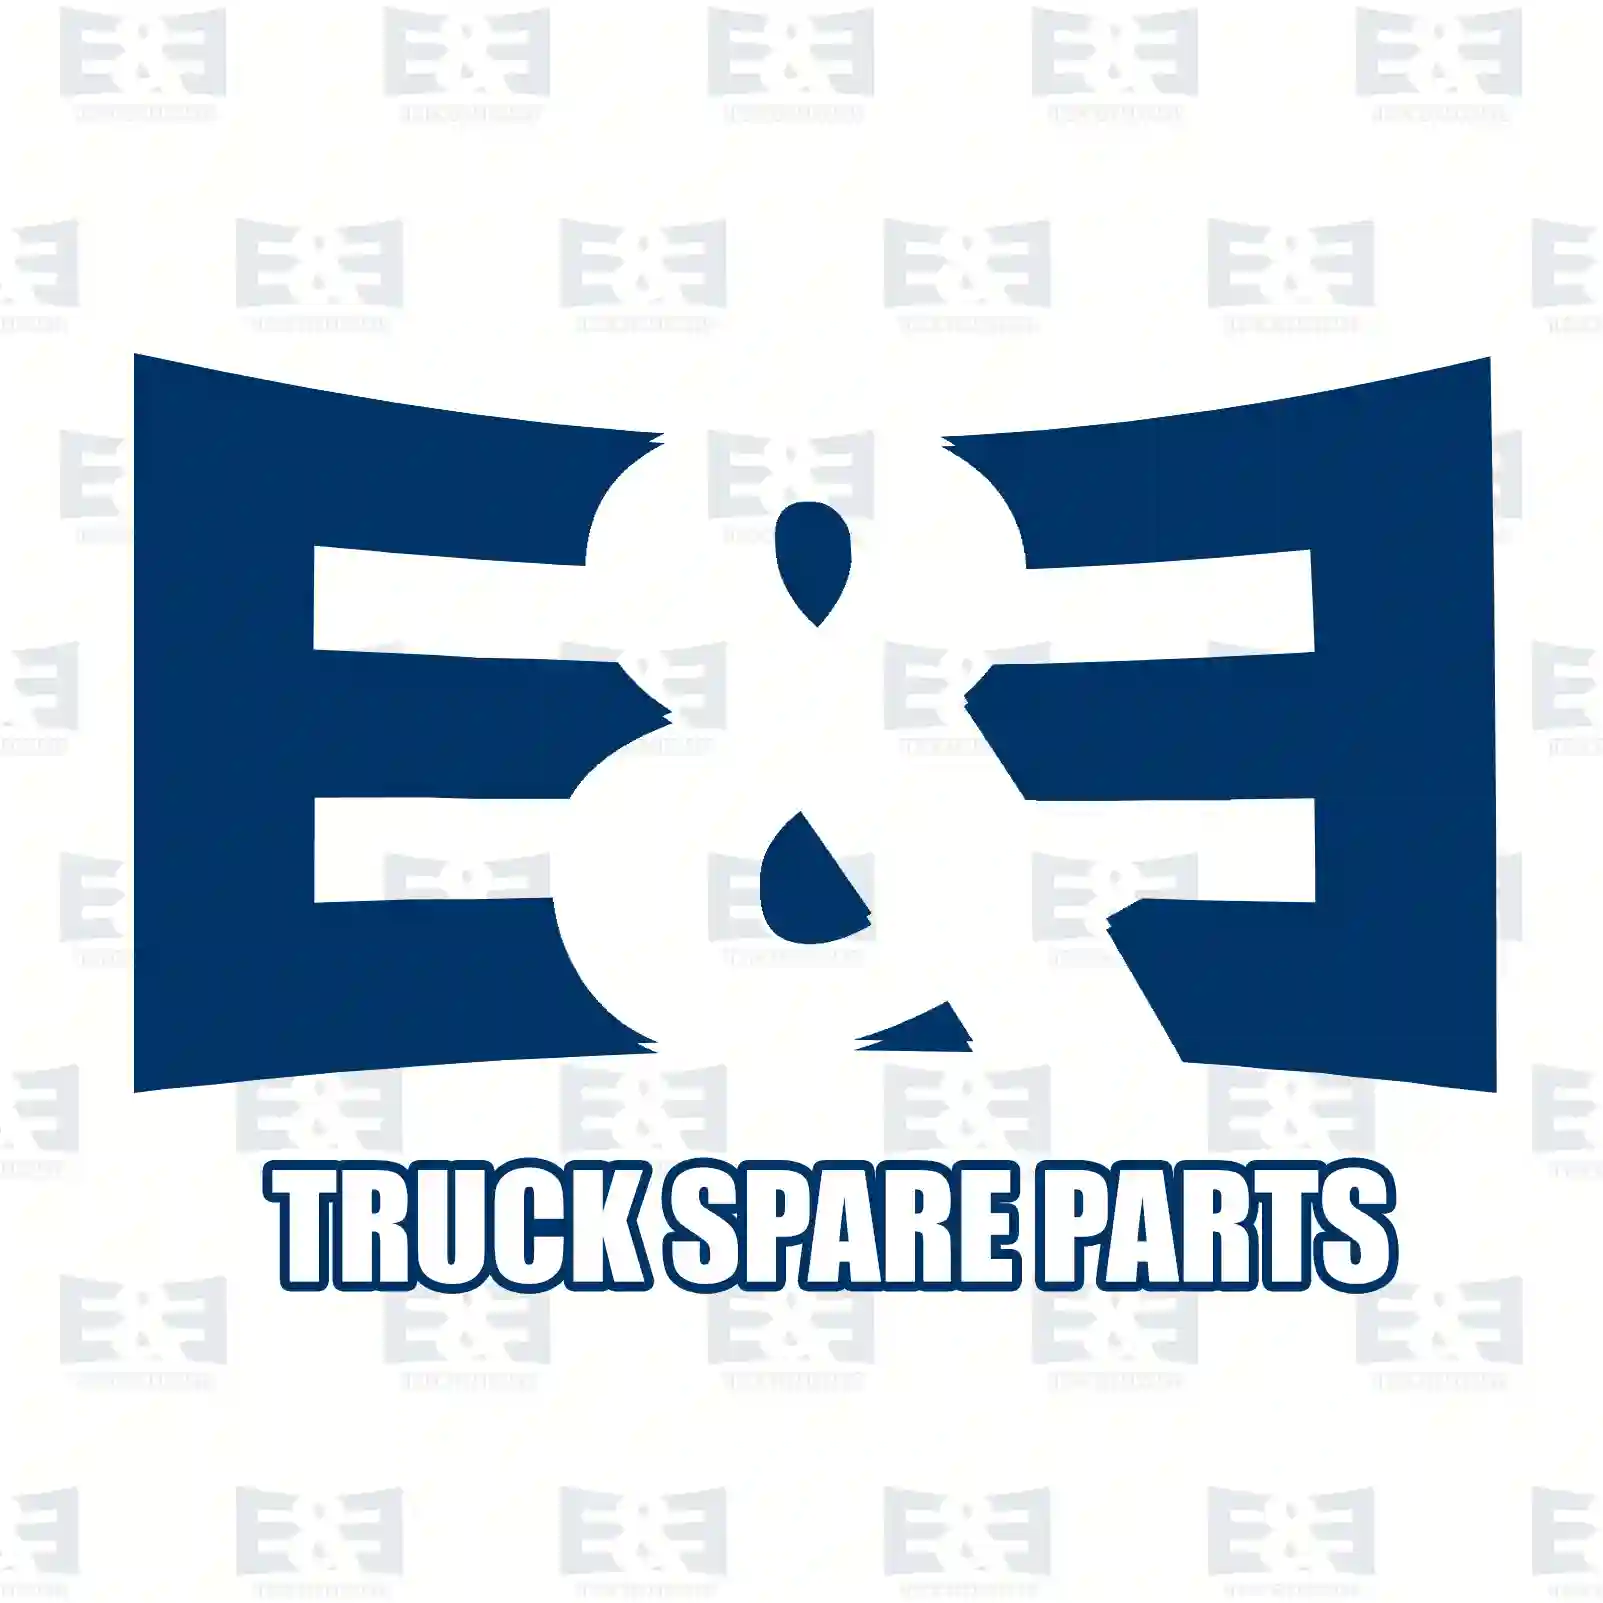 License plate lamp, 2E2298429, 634092, 1303845080, 71713033, 634092 ||  2E2298429 E&E Truck Spare Parts | Truck Spare Parts, Auotomotive Spare Parts License plate lamp, 2E2298429, 634092, 1303845080, 71713033, 634092 ||  2E2298429 E&E Truck Spare Parts | Truck Spare Parts, Auotomotive Spare Parts